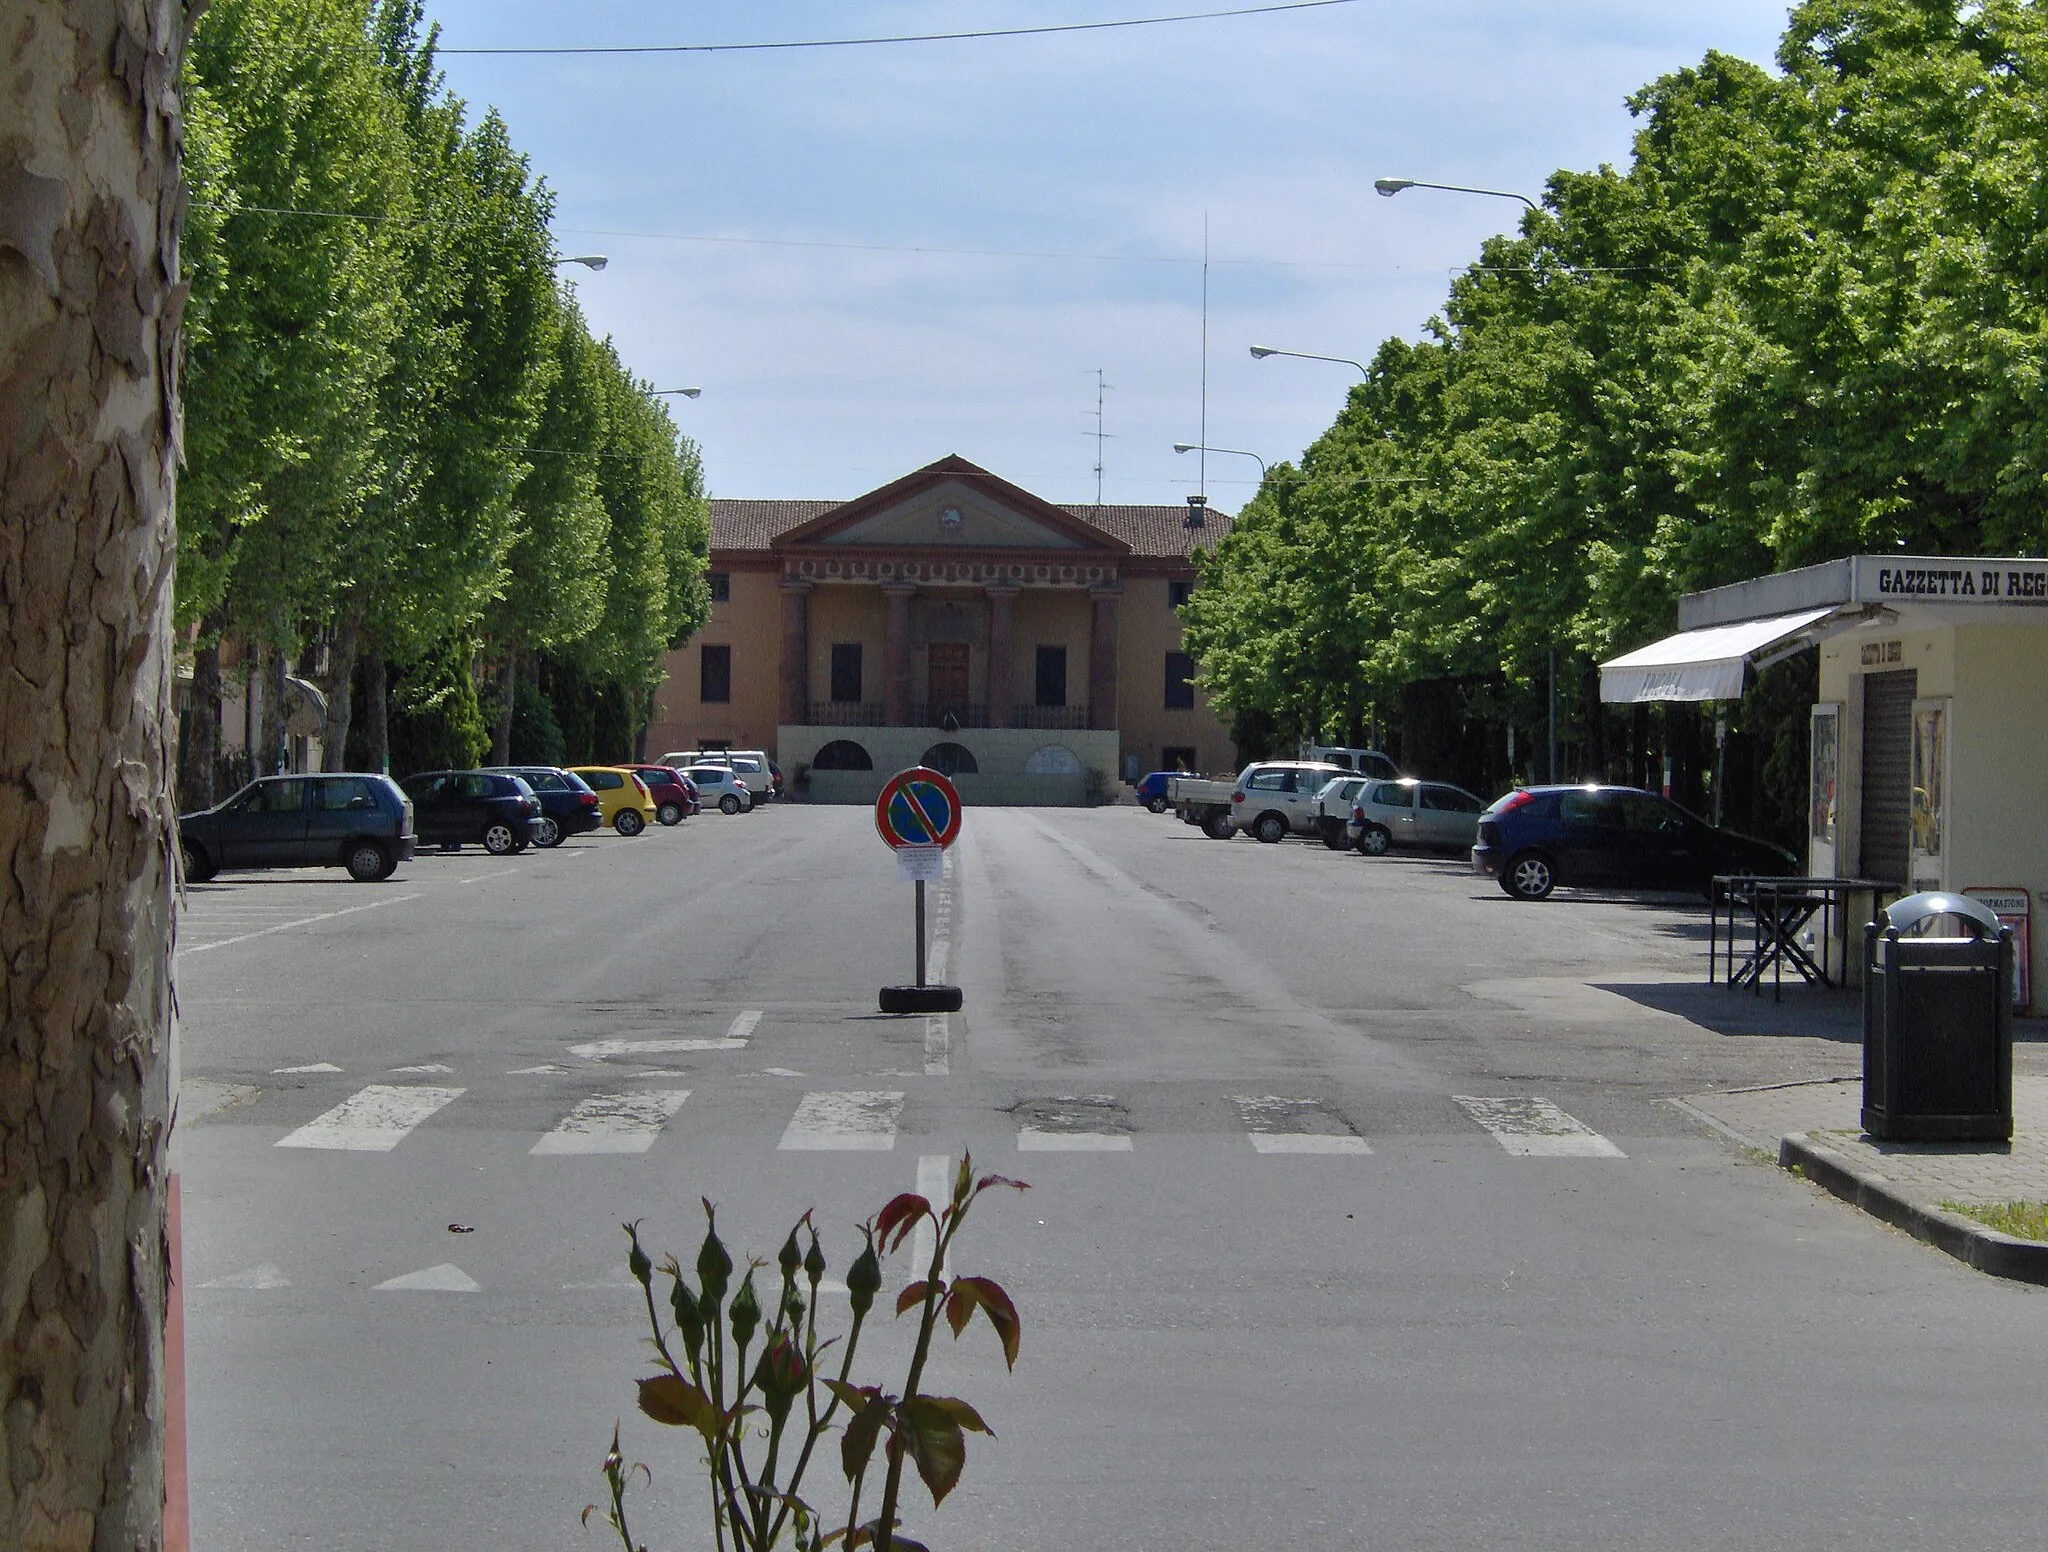 Photo showing: The city hall of Rio Saliceto, Province of Reggio Emilia, Emiglia-Romagna, Italy